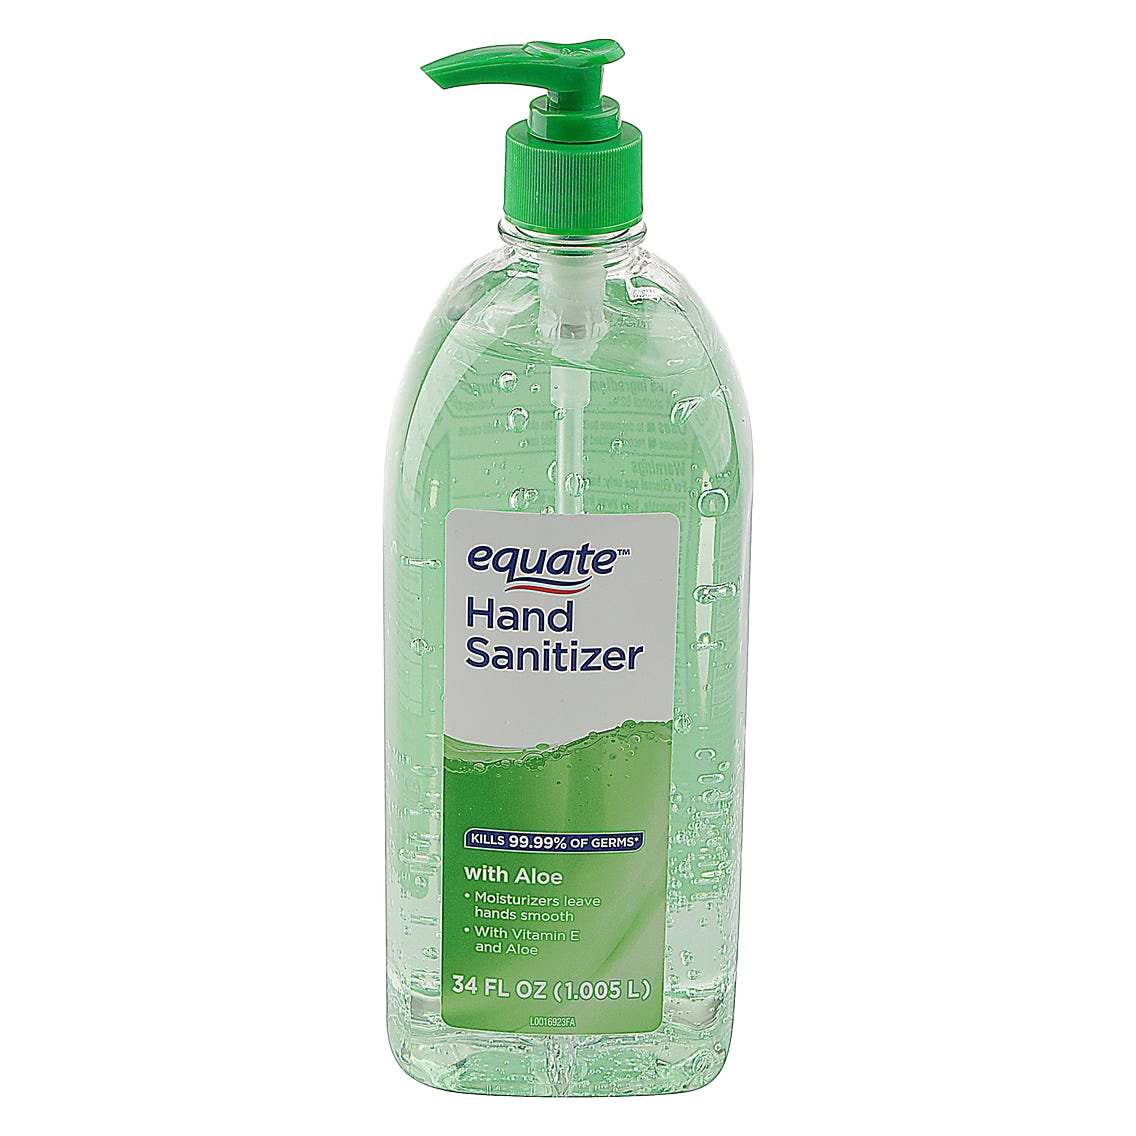 Hand Sanitizer Bottle PNG Image Background